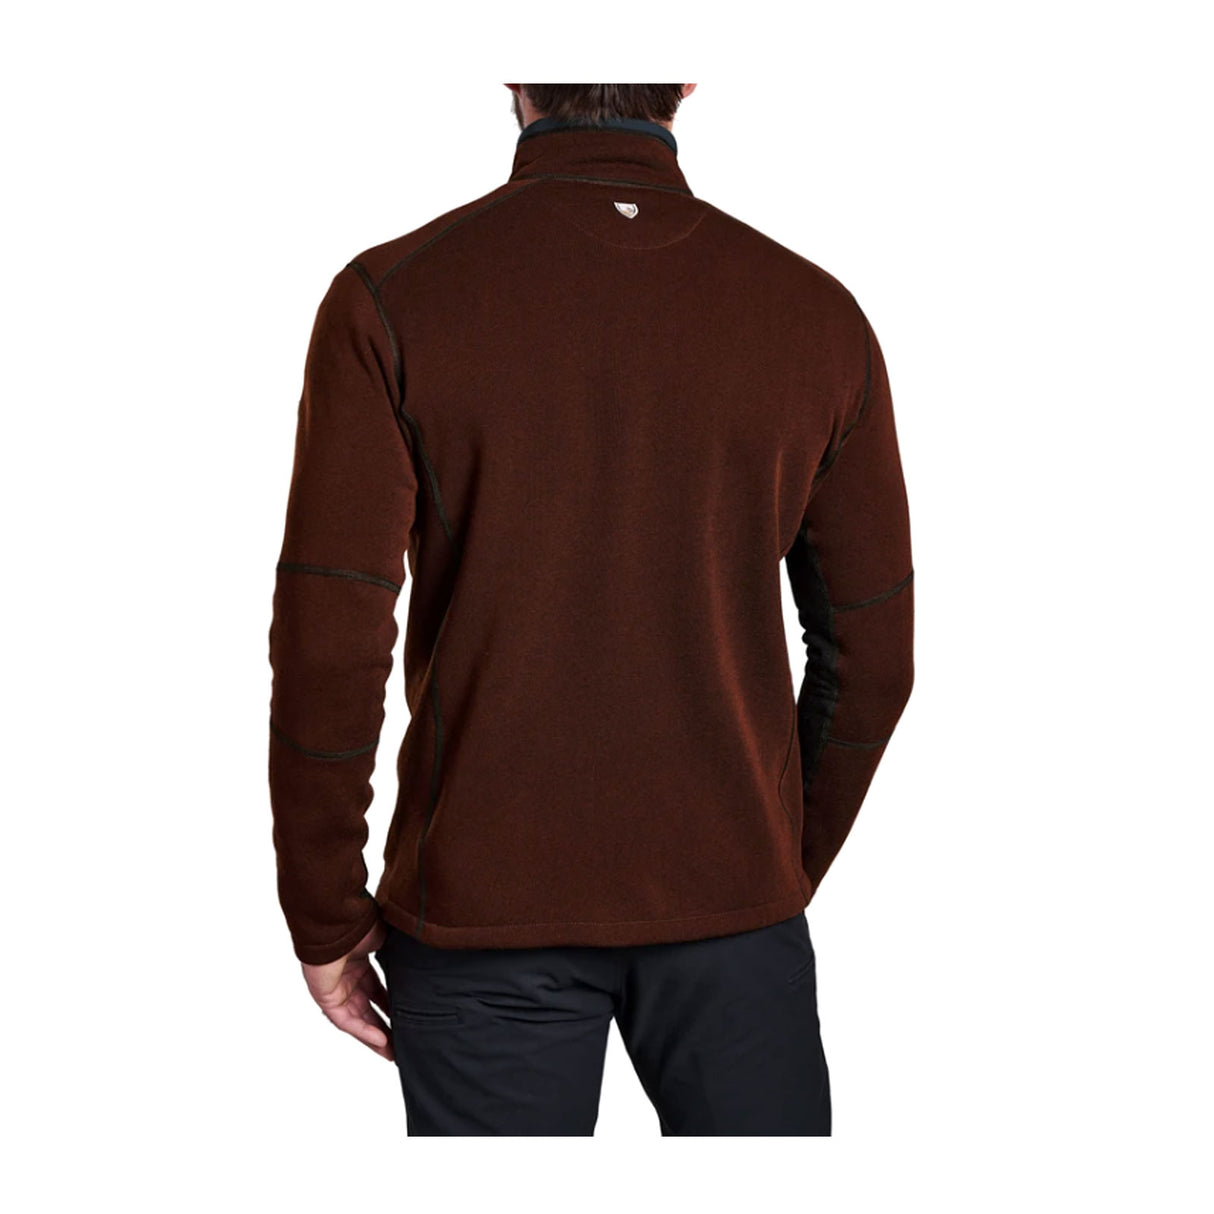 Kuhl Revel 1/4 Zip Sweater (Men) - Mole/Charcoal Sportswear - Upperbody - Long Sleeve - The Heel Shoe Fitters